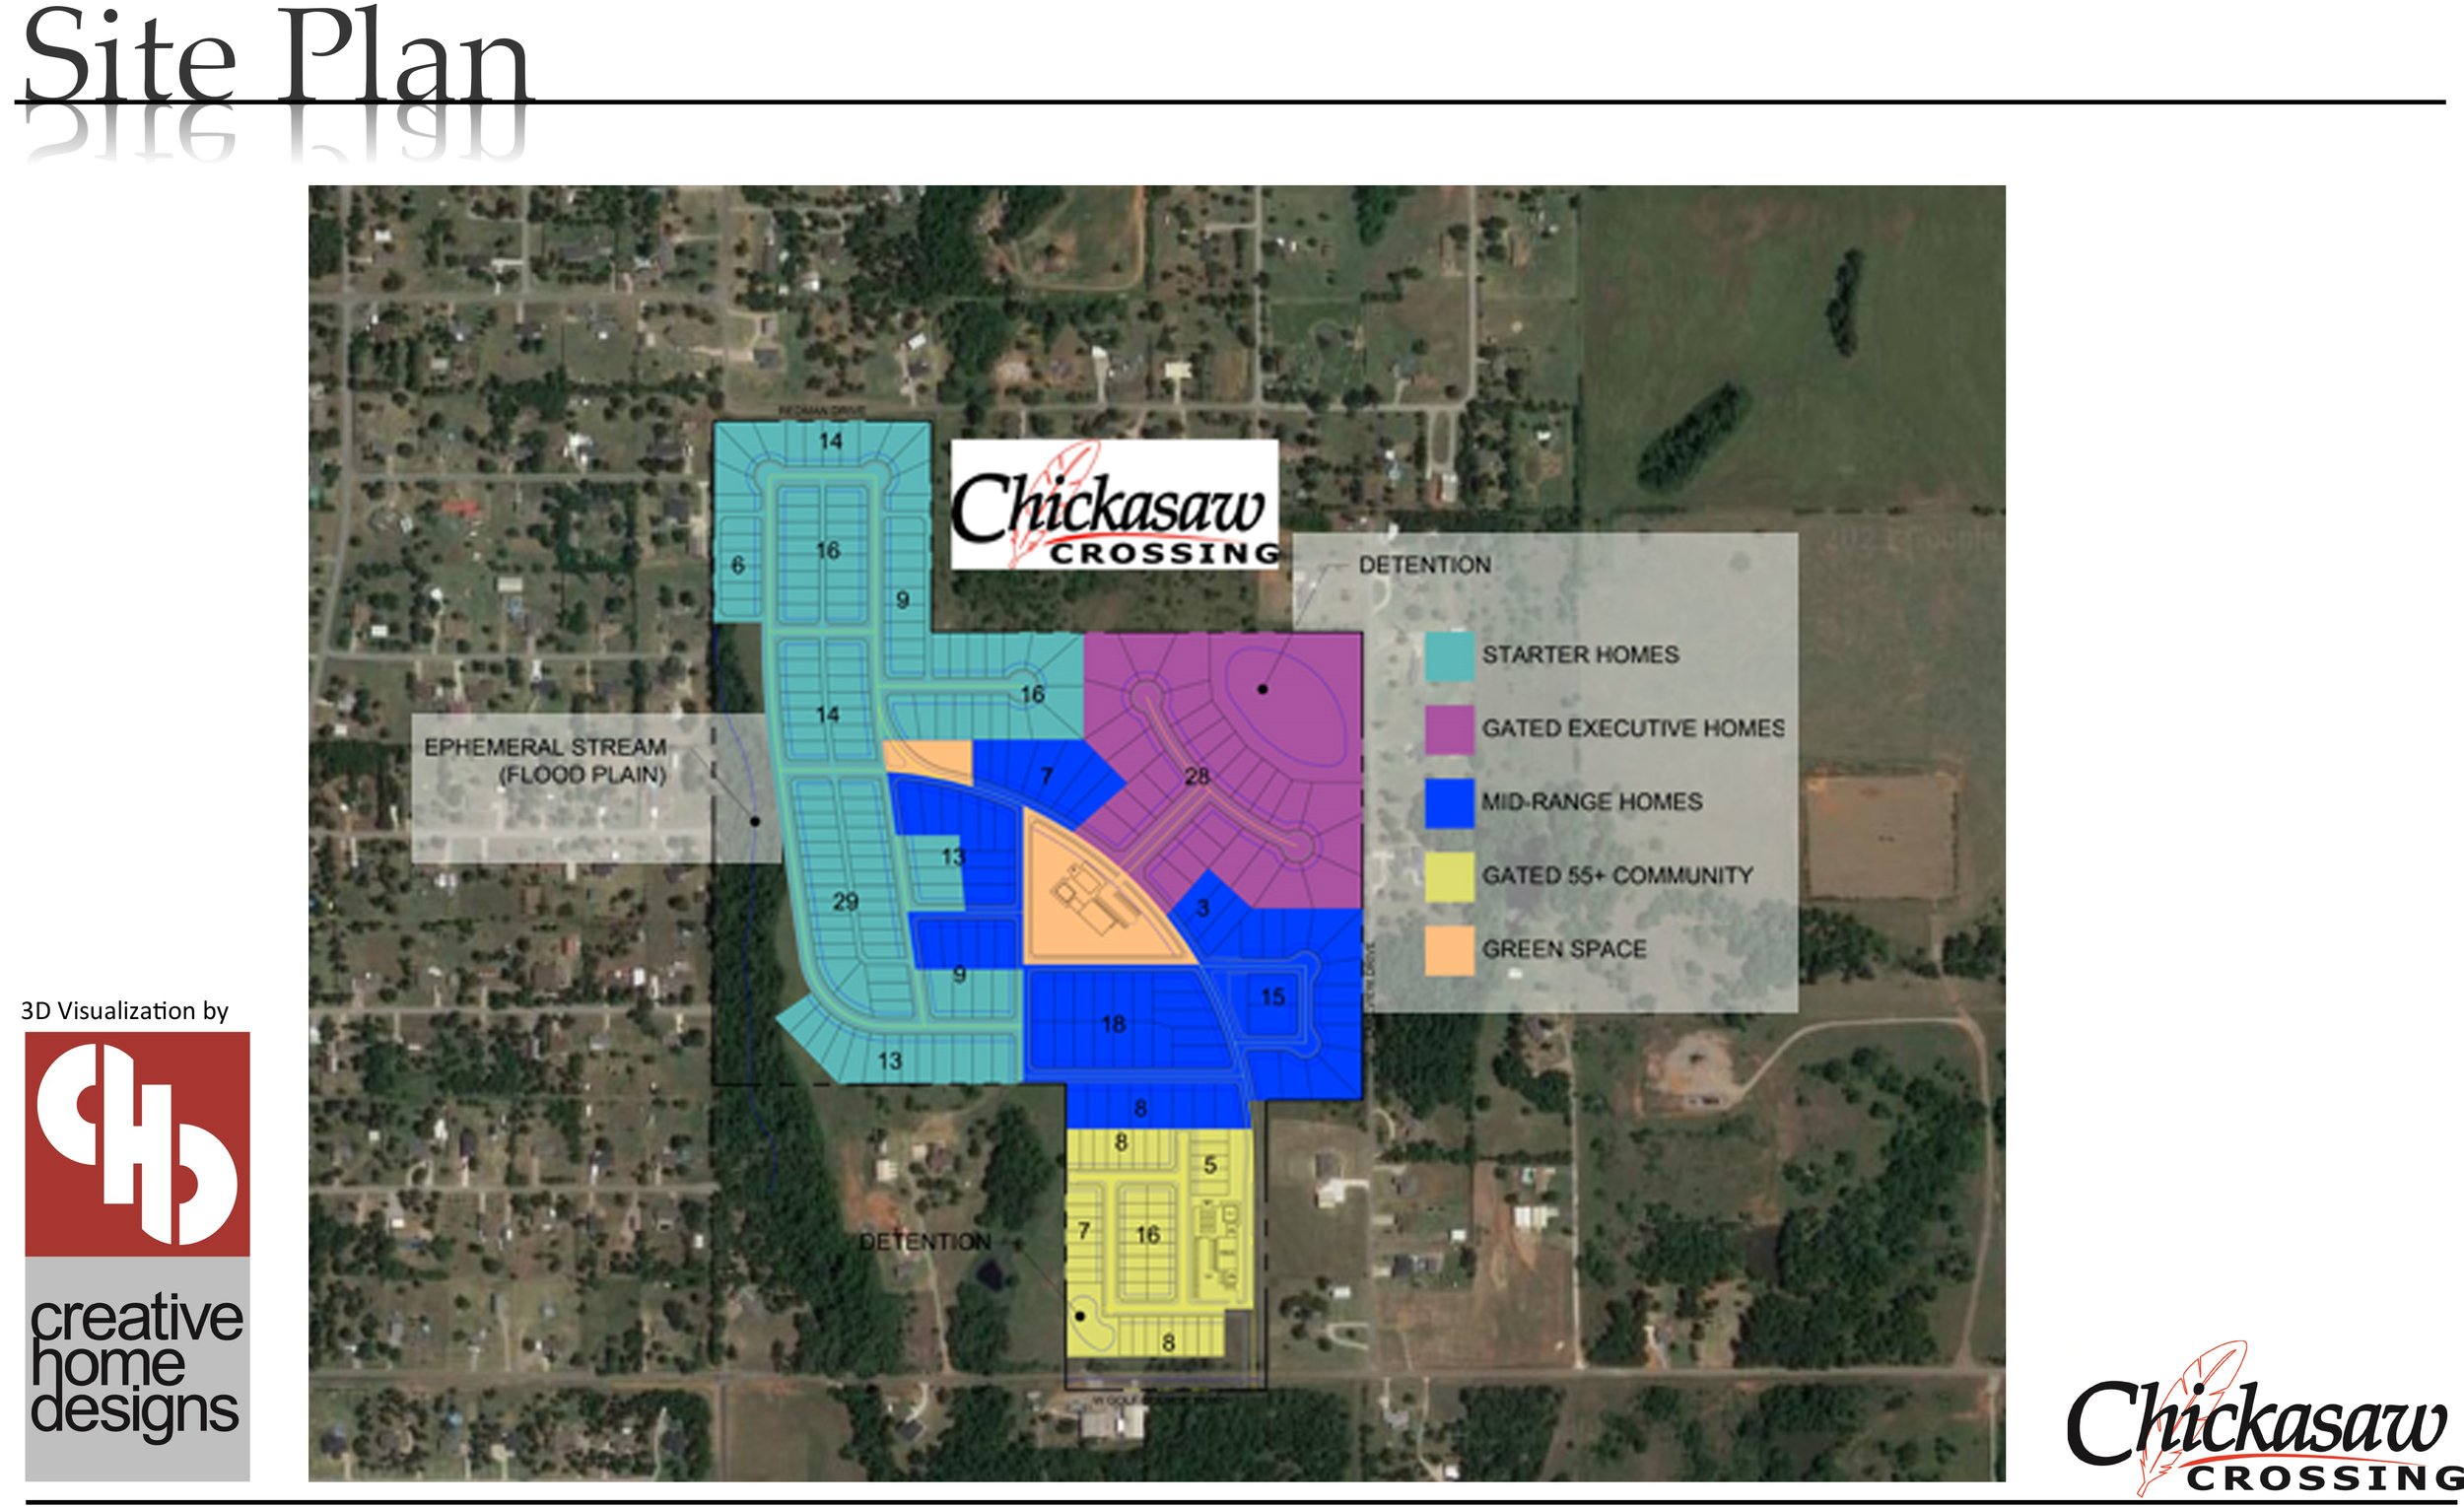 Chickasaw-Crossing-Presentation-Packet-2.jpg